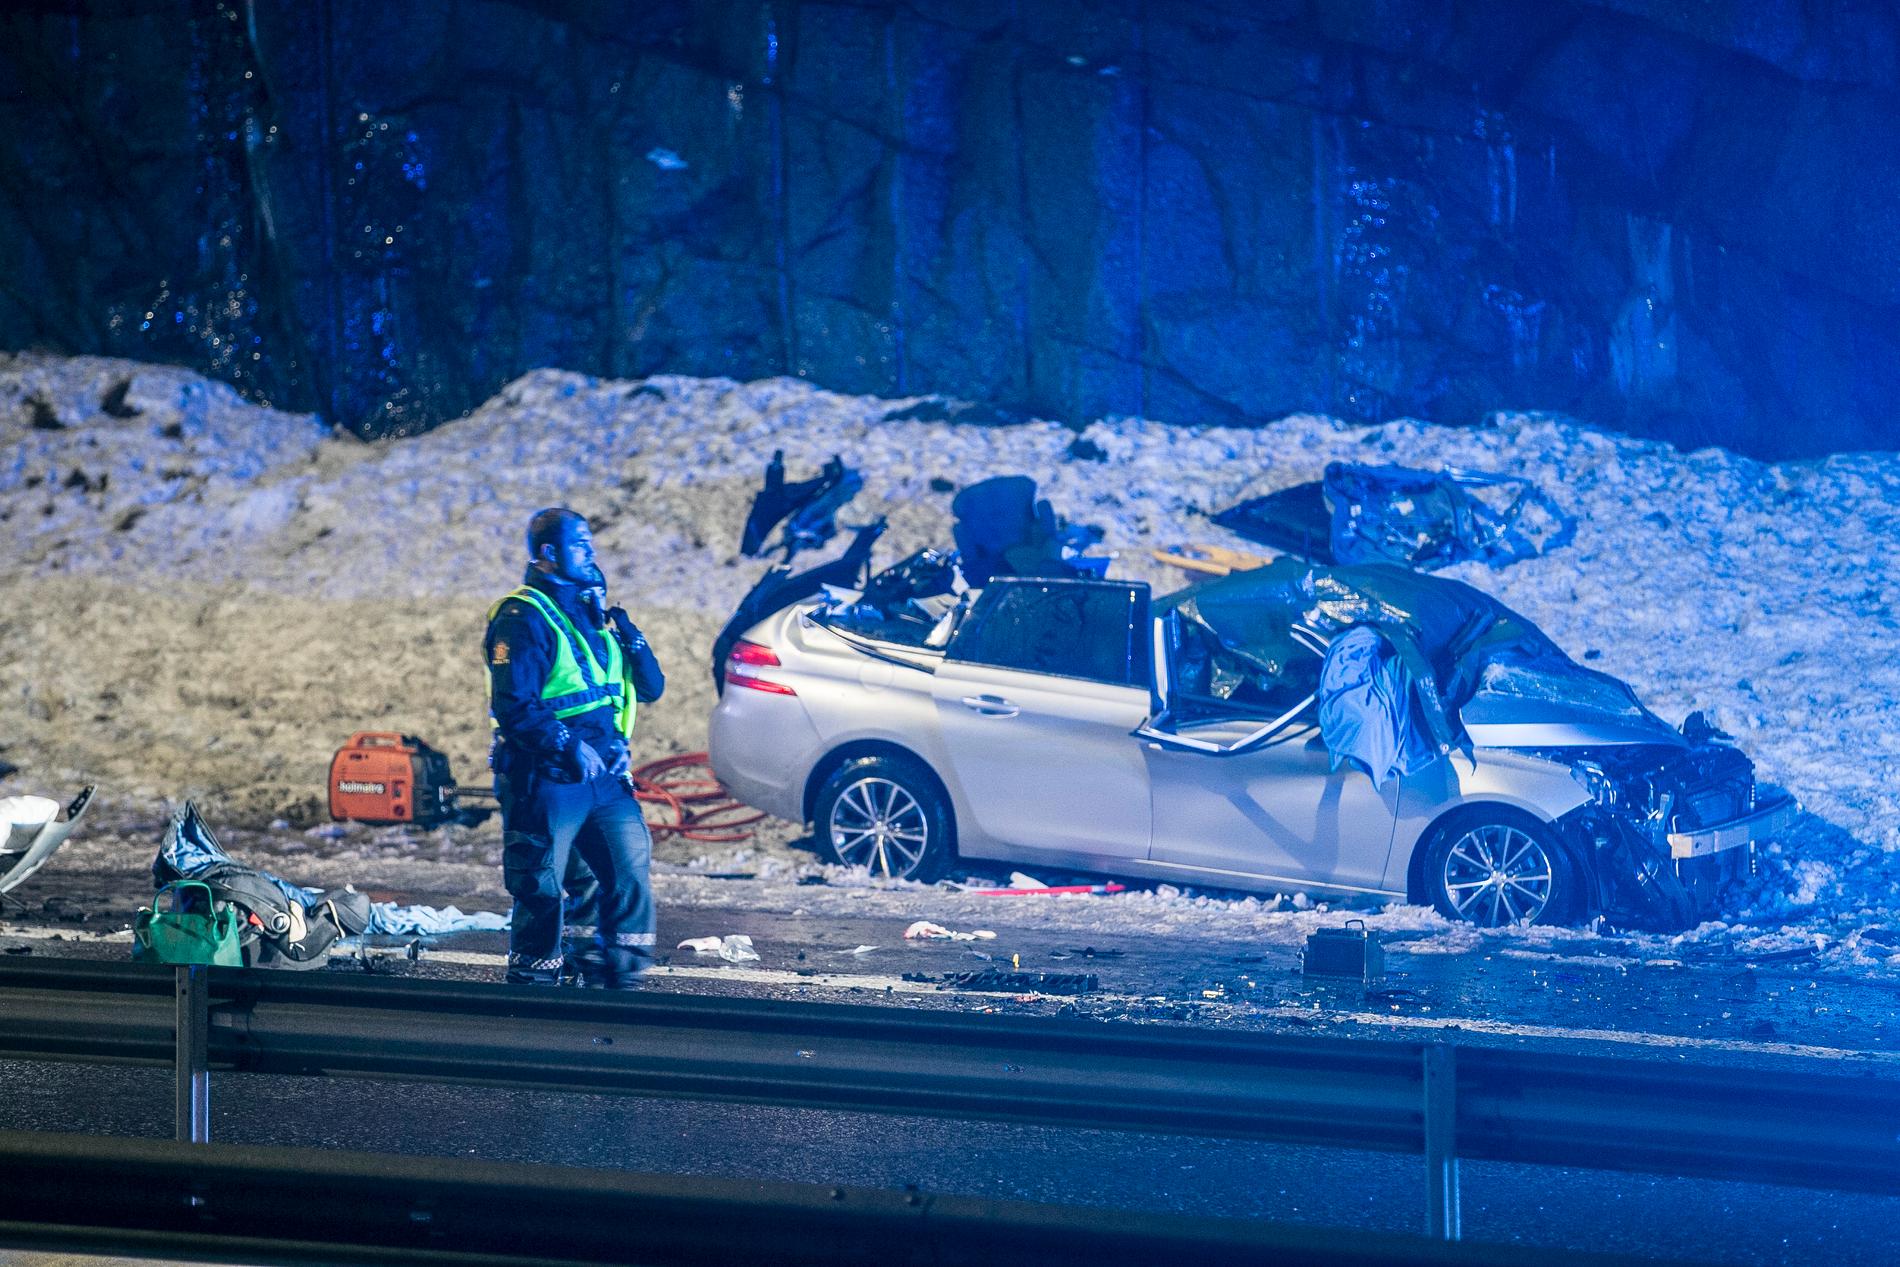 21-åringen som forårsaket ulykken på E18 mellom Langangen og Larvik natt til første nyttårsdag, er fengslet i fire uker. Foto: Trond Reidar Teigen / NTB scanpix